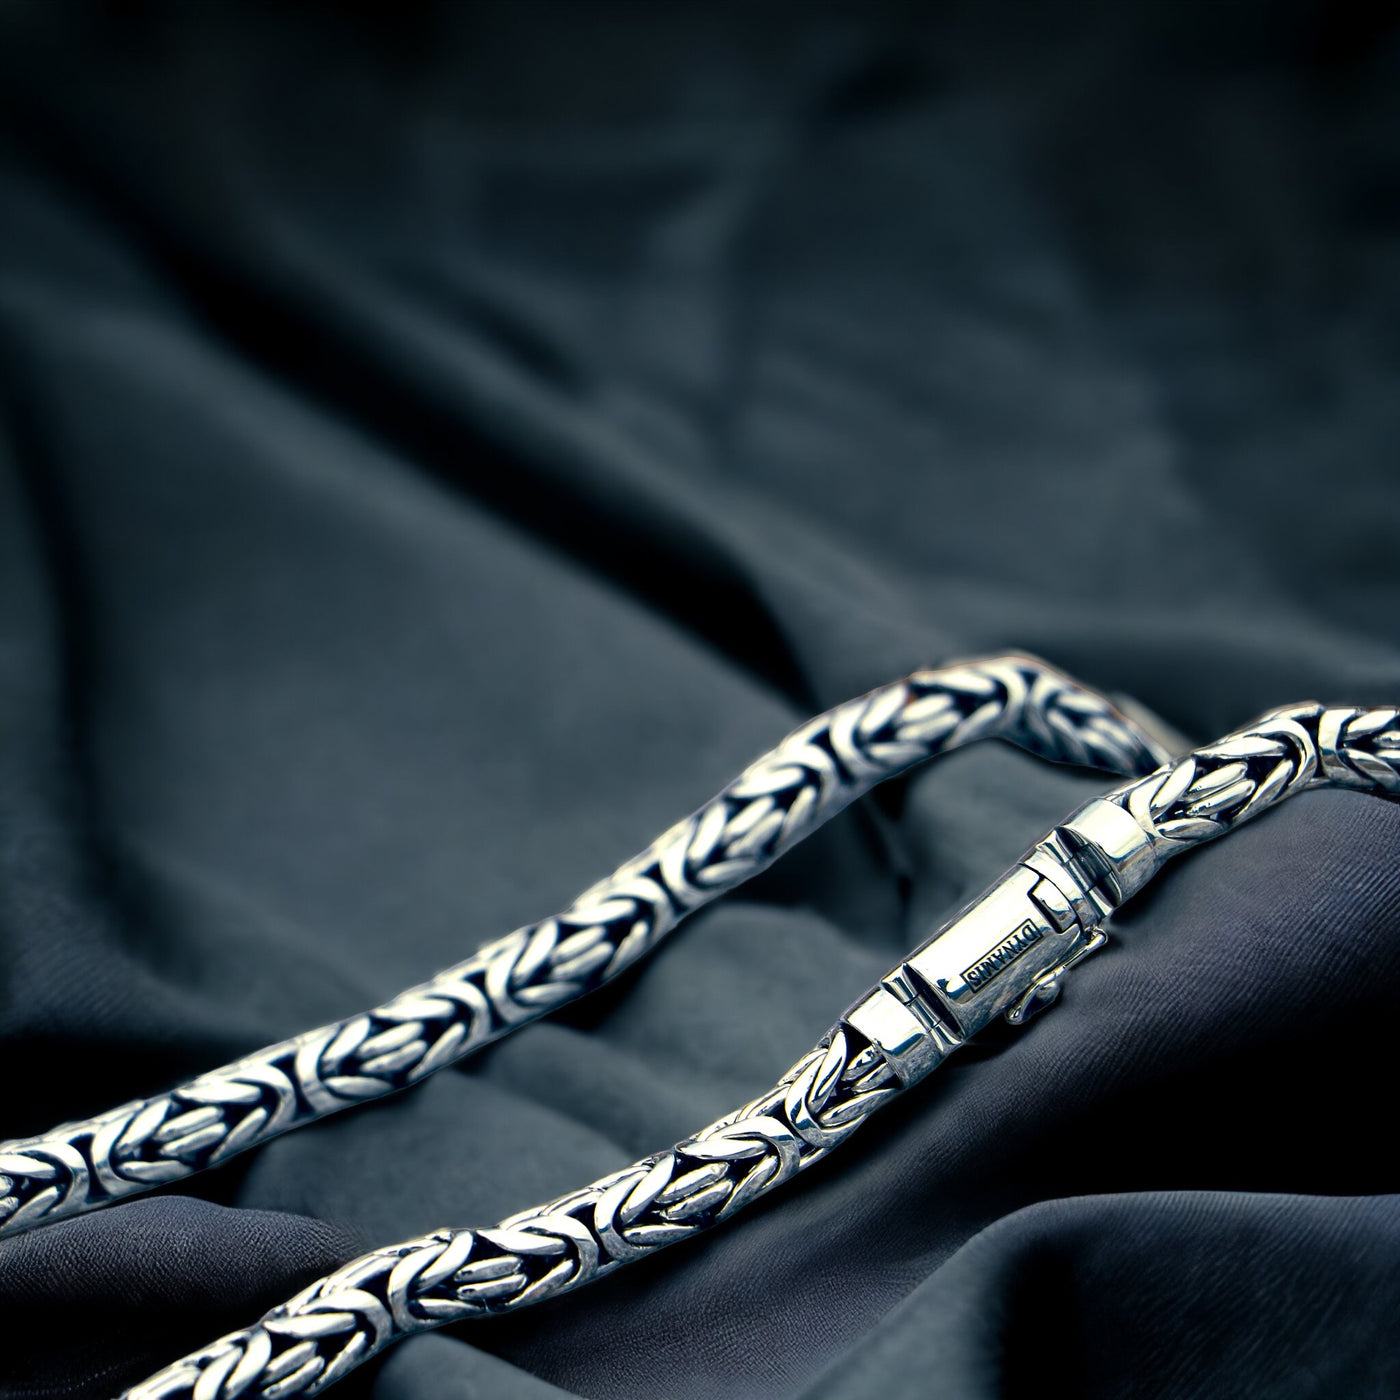 Heavy silver byzantine necklace  (8 mm)